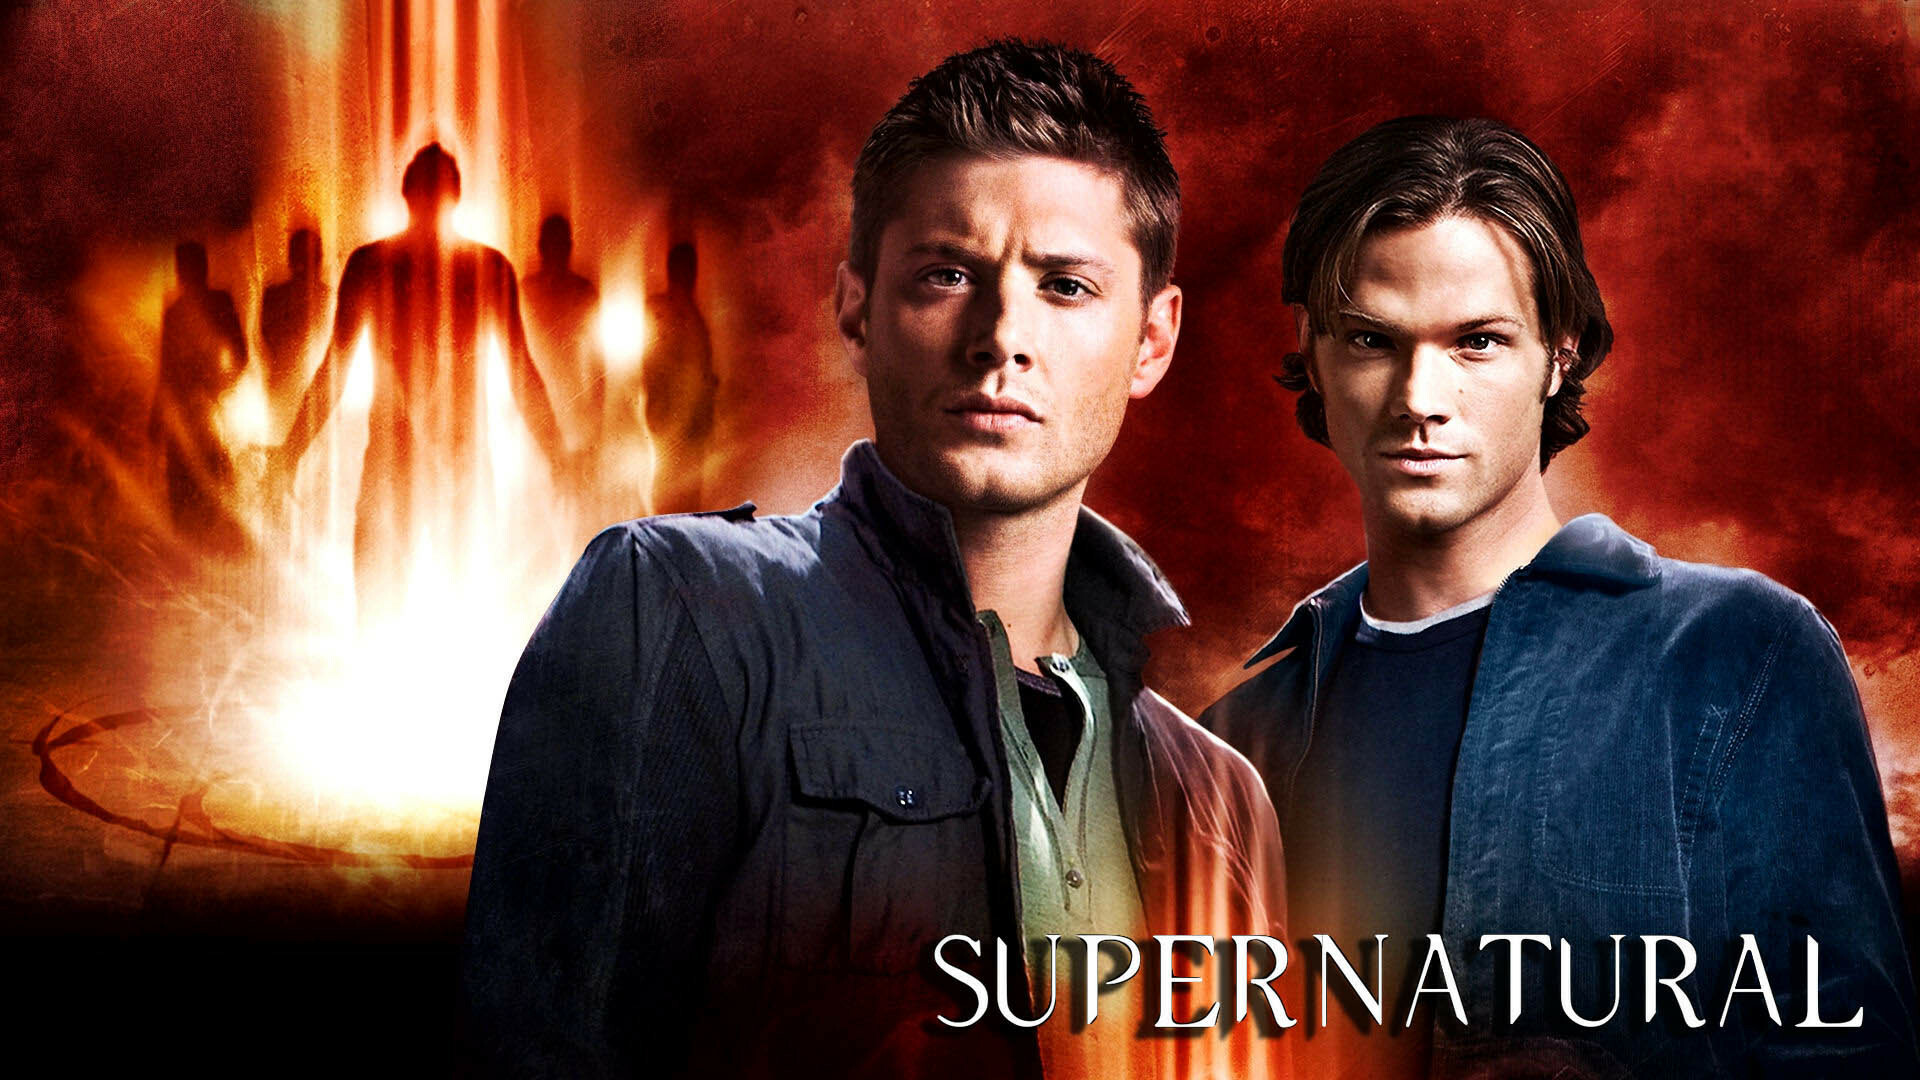 Supernatural: 38 awards and 128 nominations, Fantasy. 1920x1080 Full HD Wallpaper.